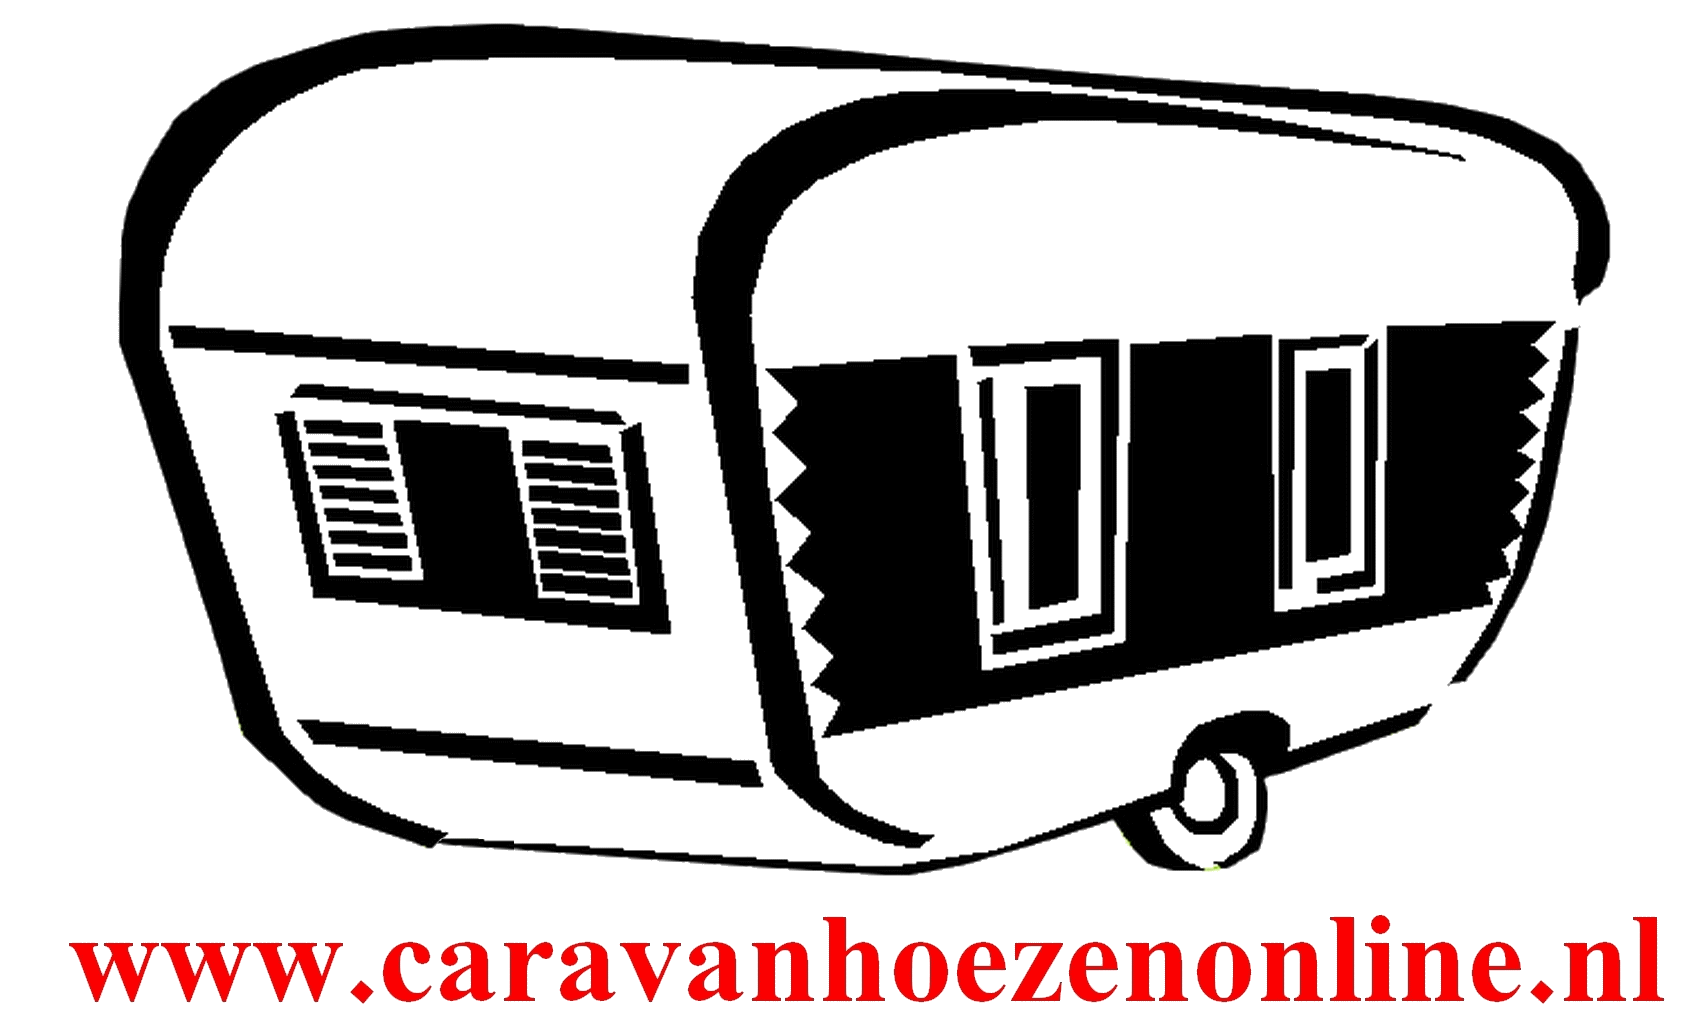 caravanhoezenonline.nl logo